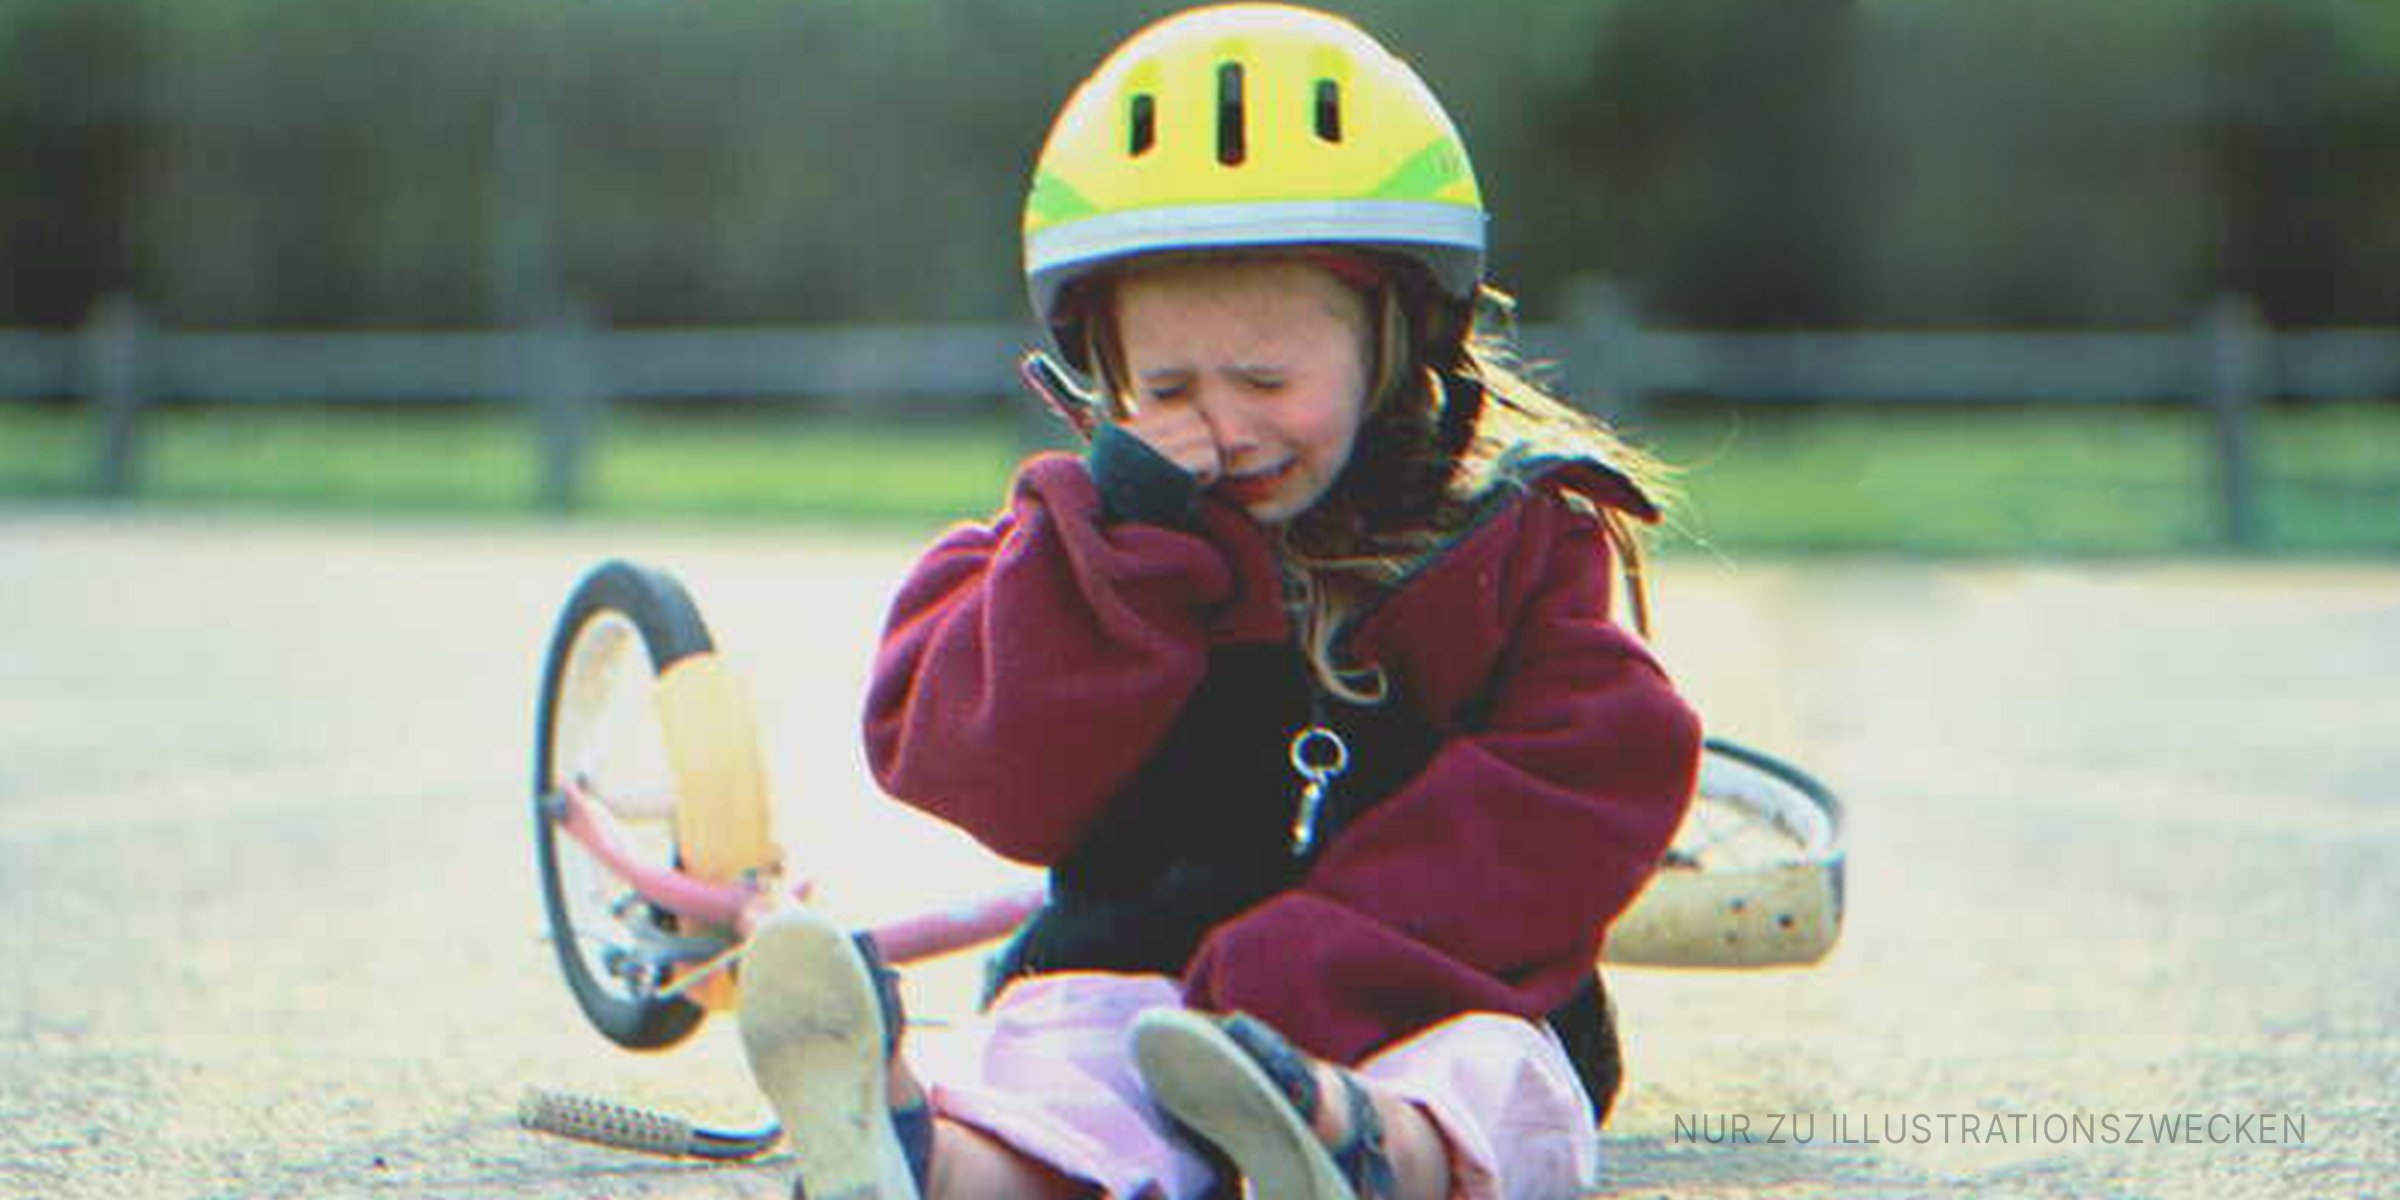 Ein kleines Mädchen weint, nachdem es von seinem Fahrrad gefallen ist | Quelle: Getty Images